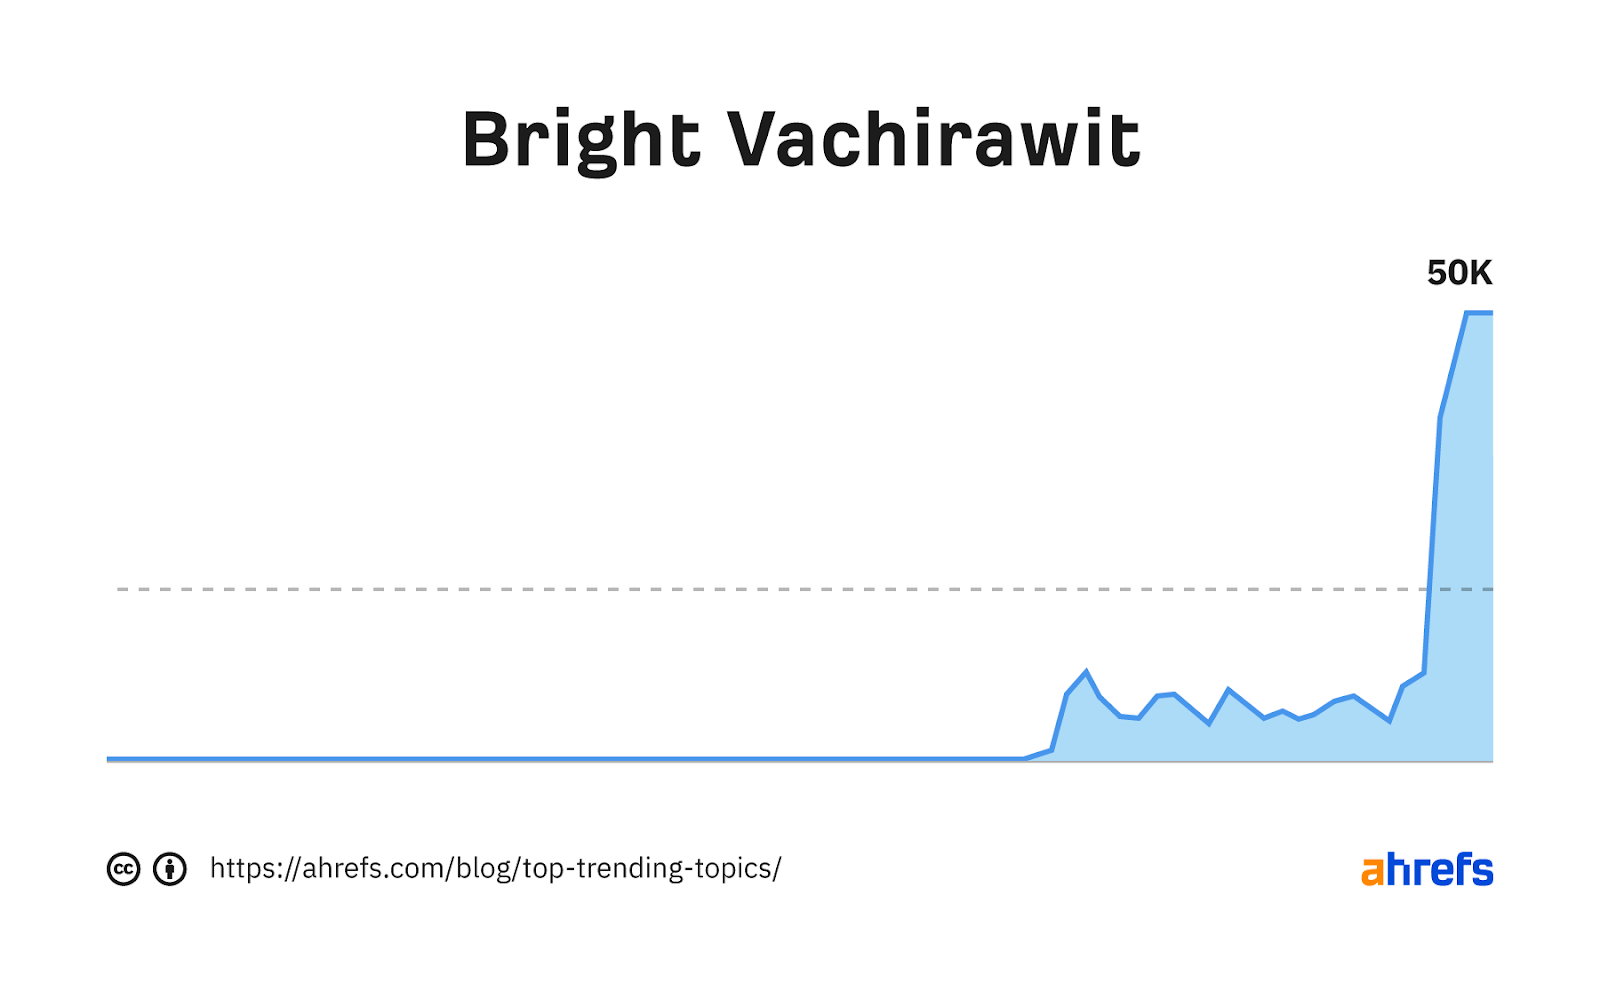 Graphique de tendance pour le mot-clé "Vachirawit lumineux"